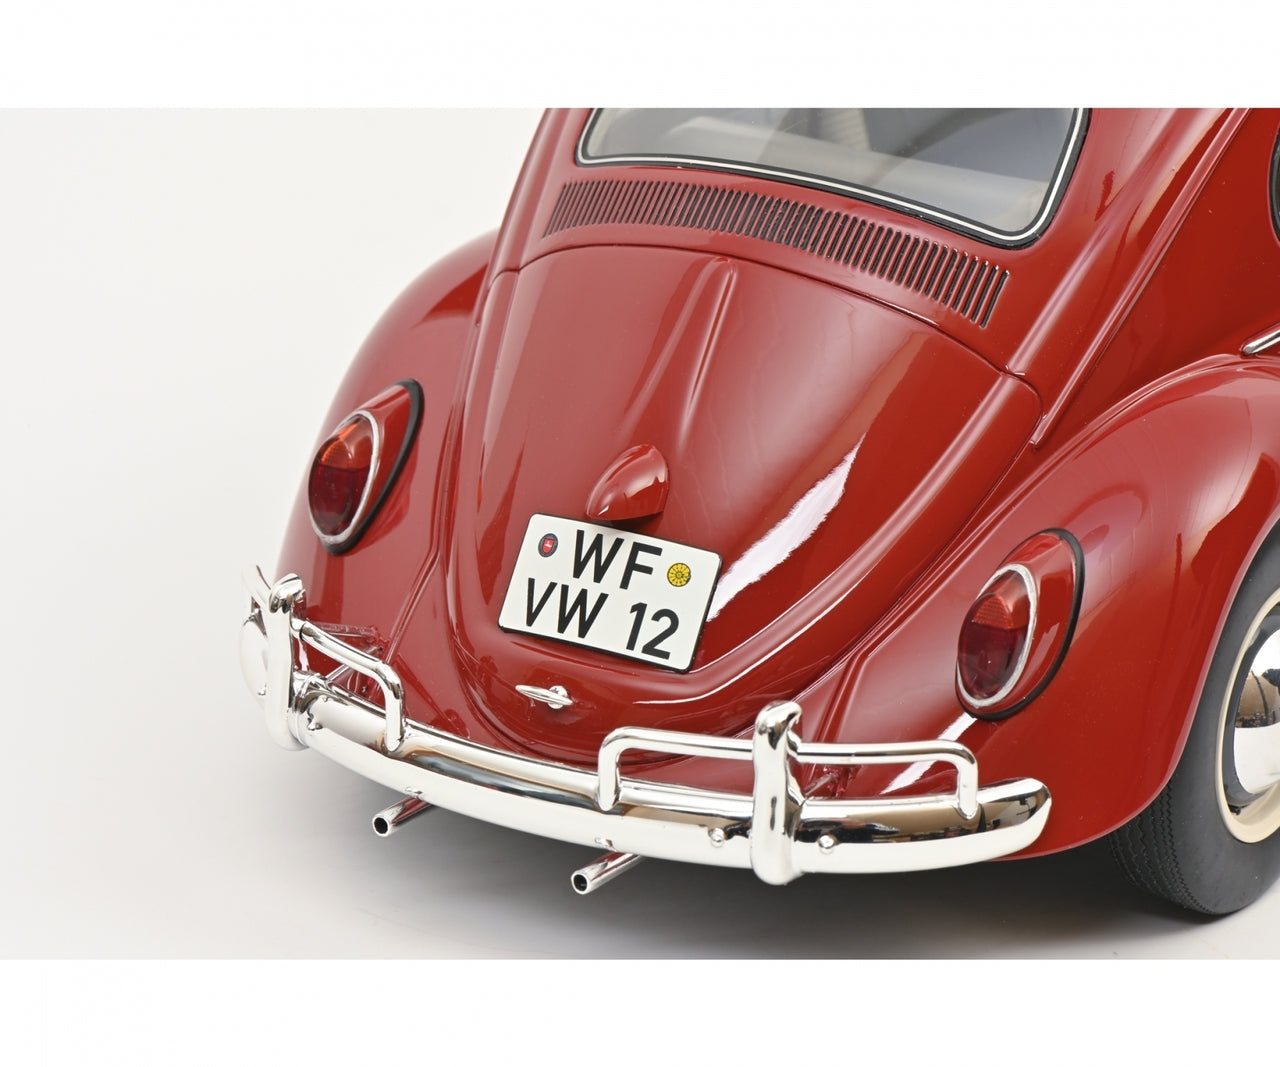 Schuco 1:12 Volkswagen Beetle folding roof red 450046300